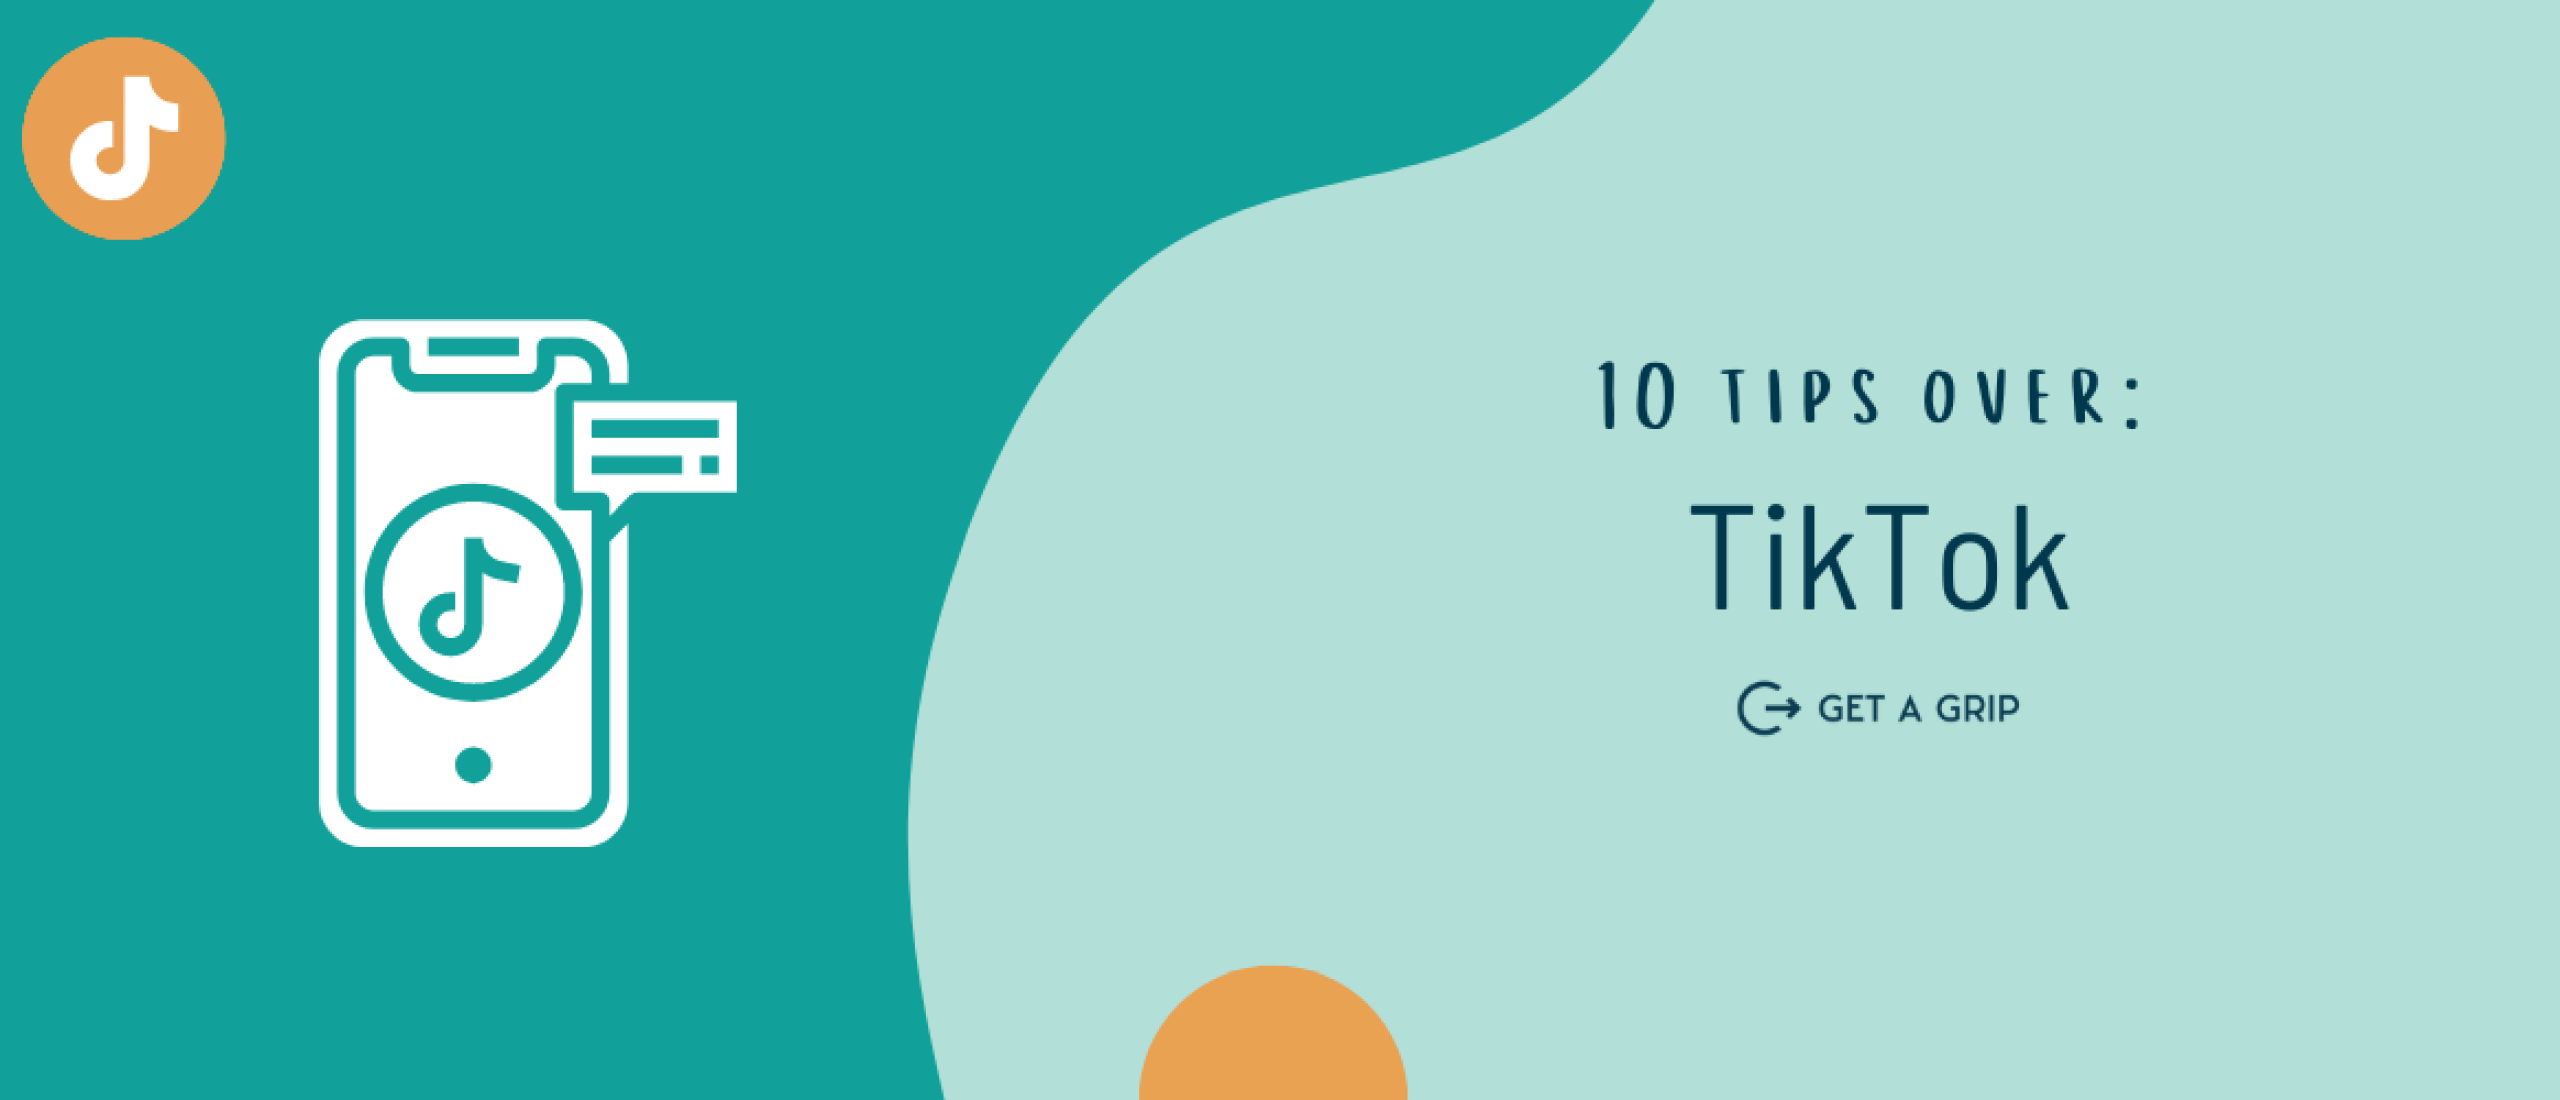 10 tips over Tiktok